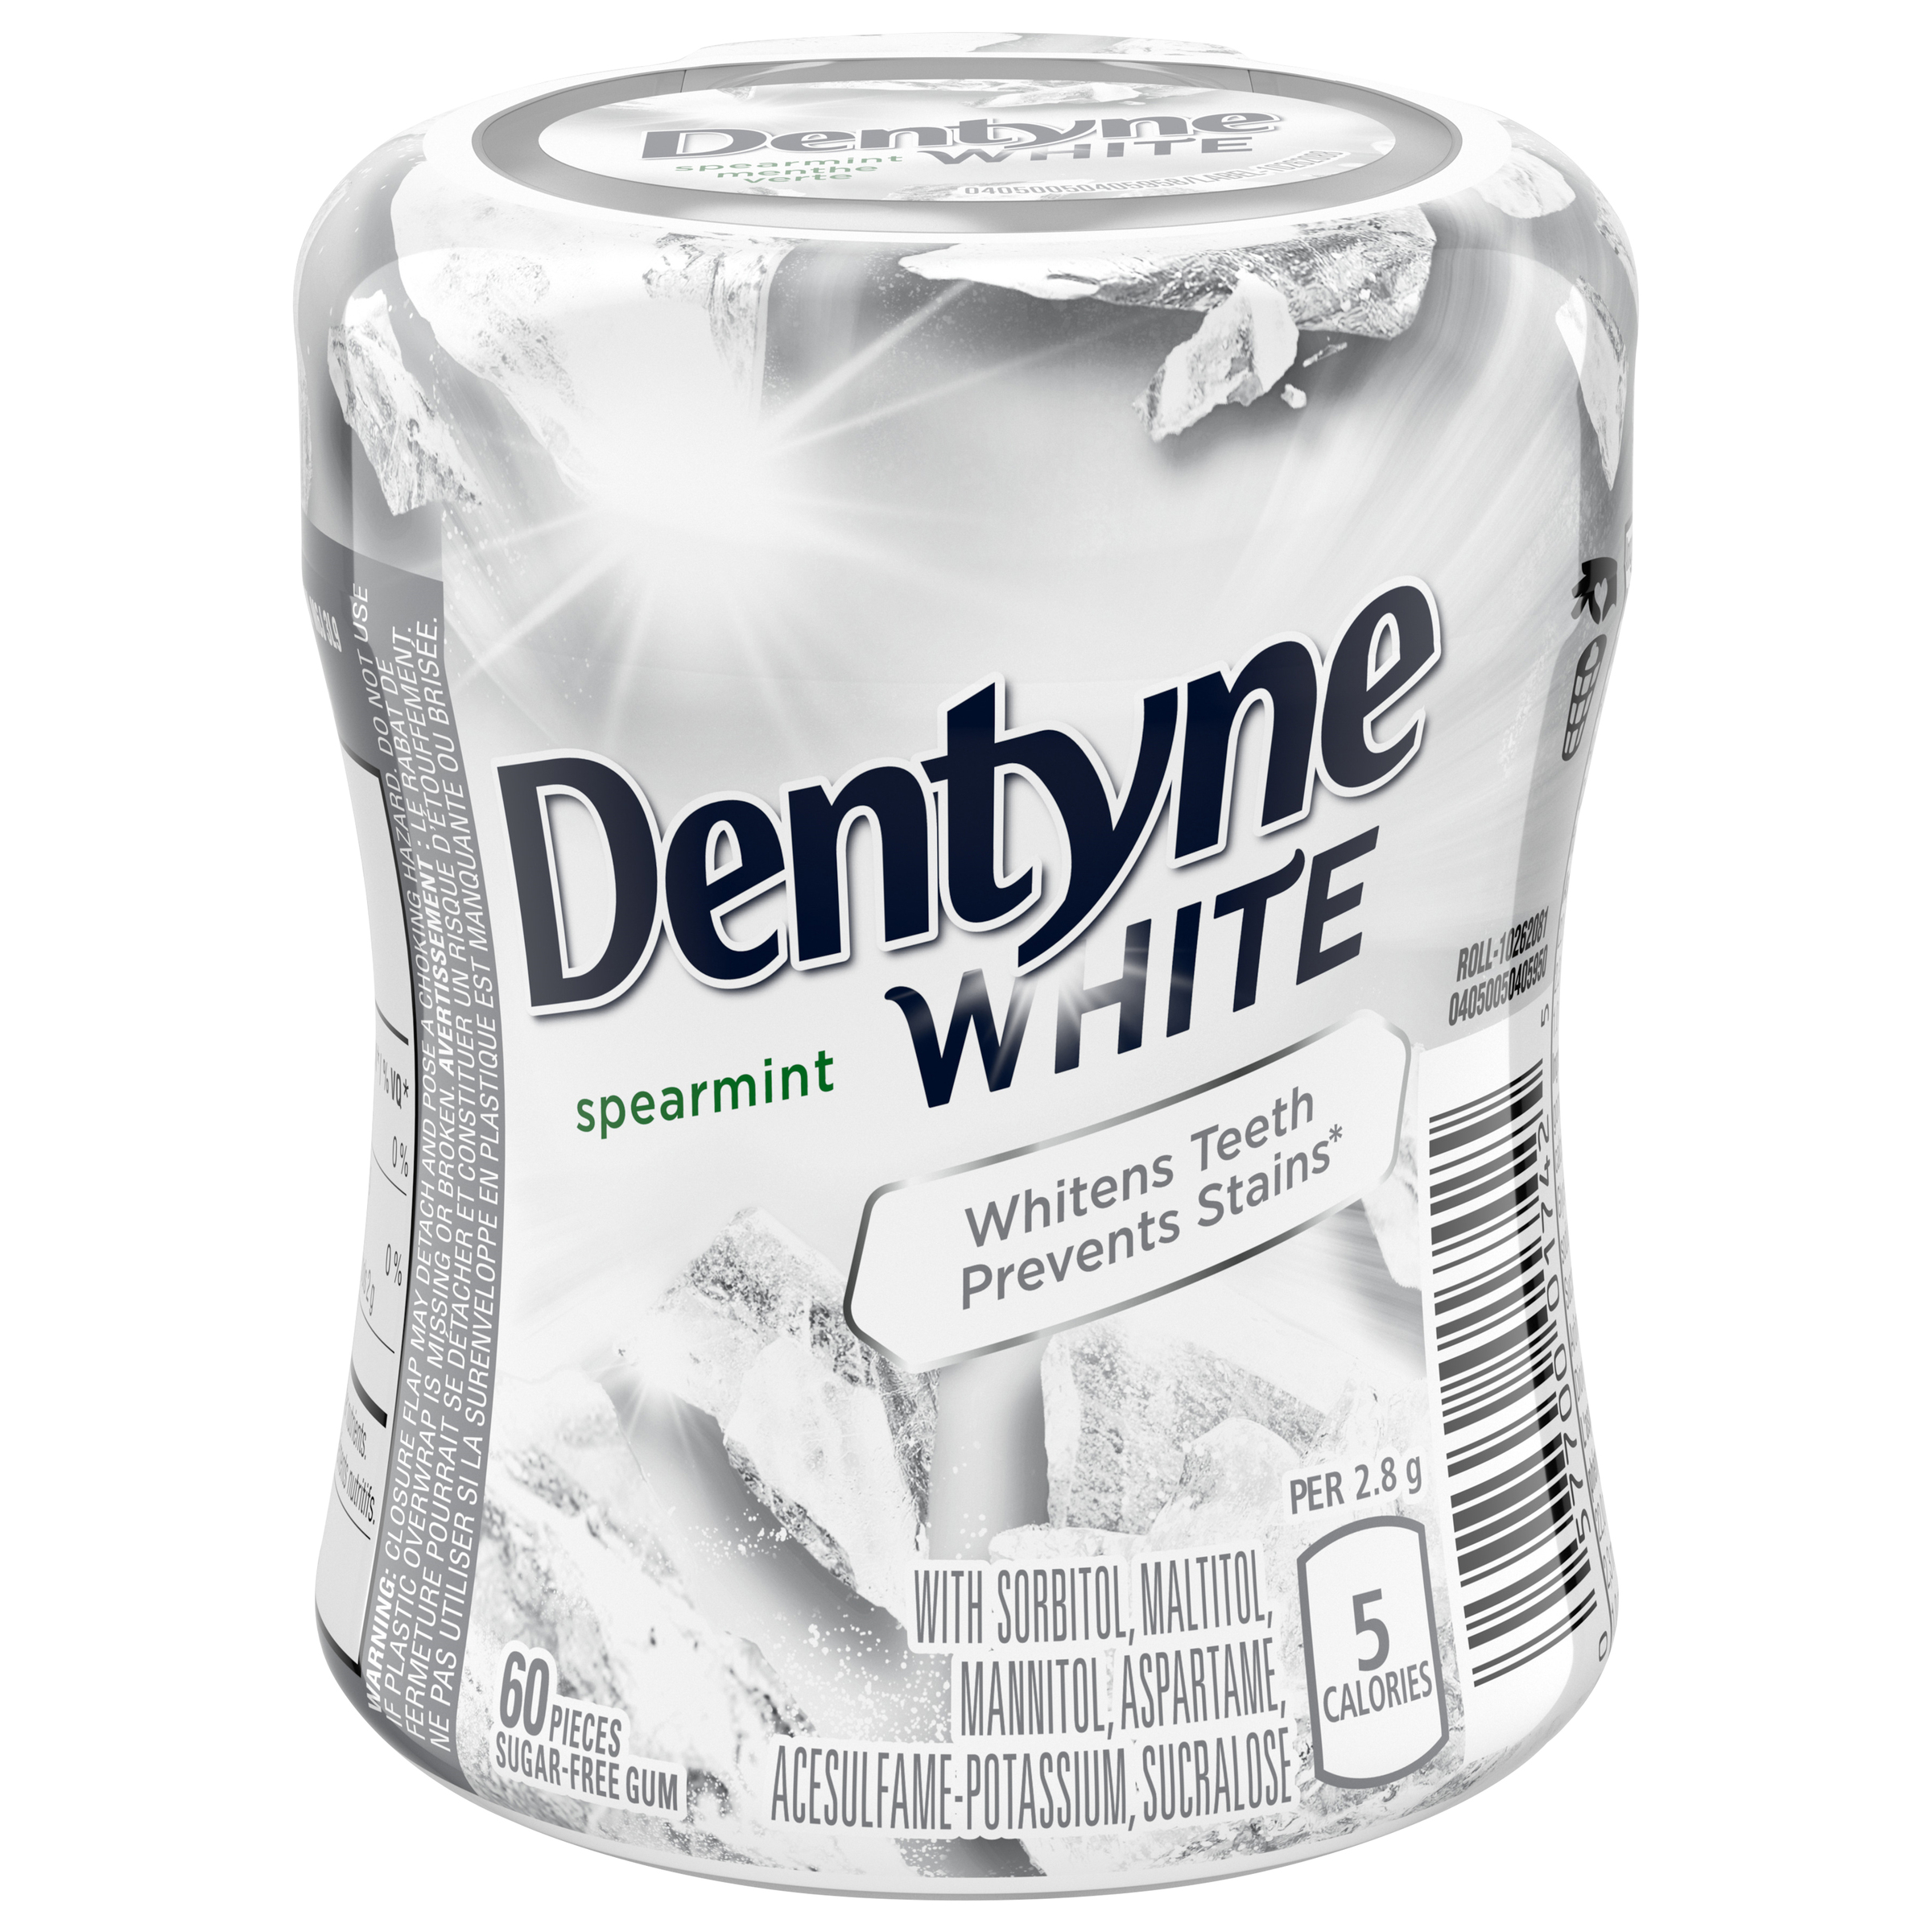 Dentyne White Spearmint Gum 60 Count